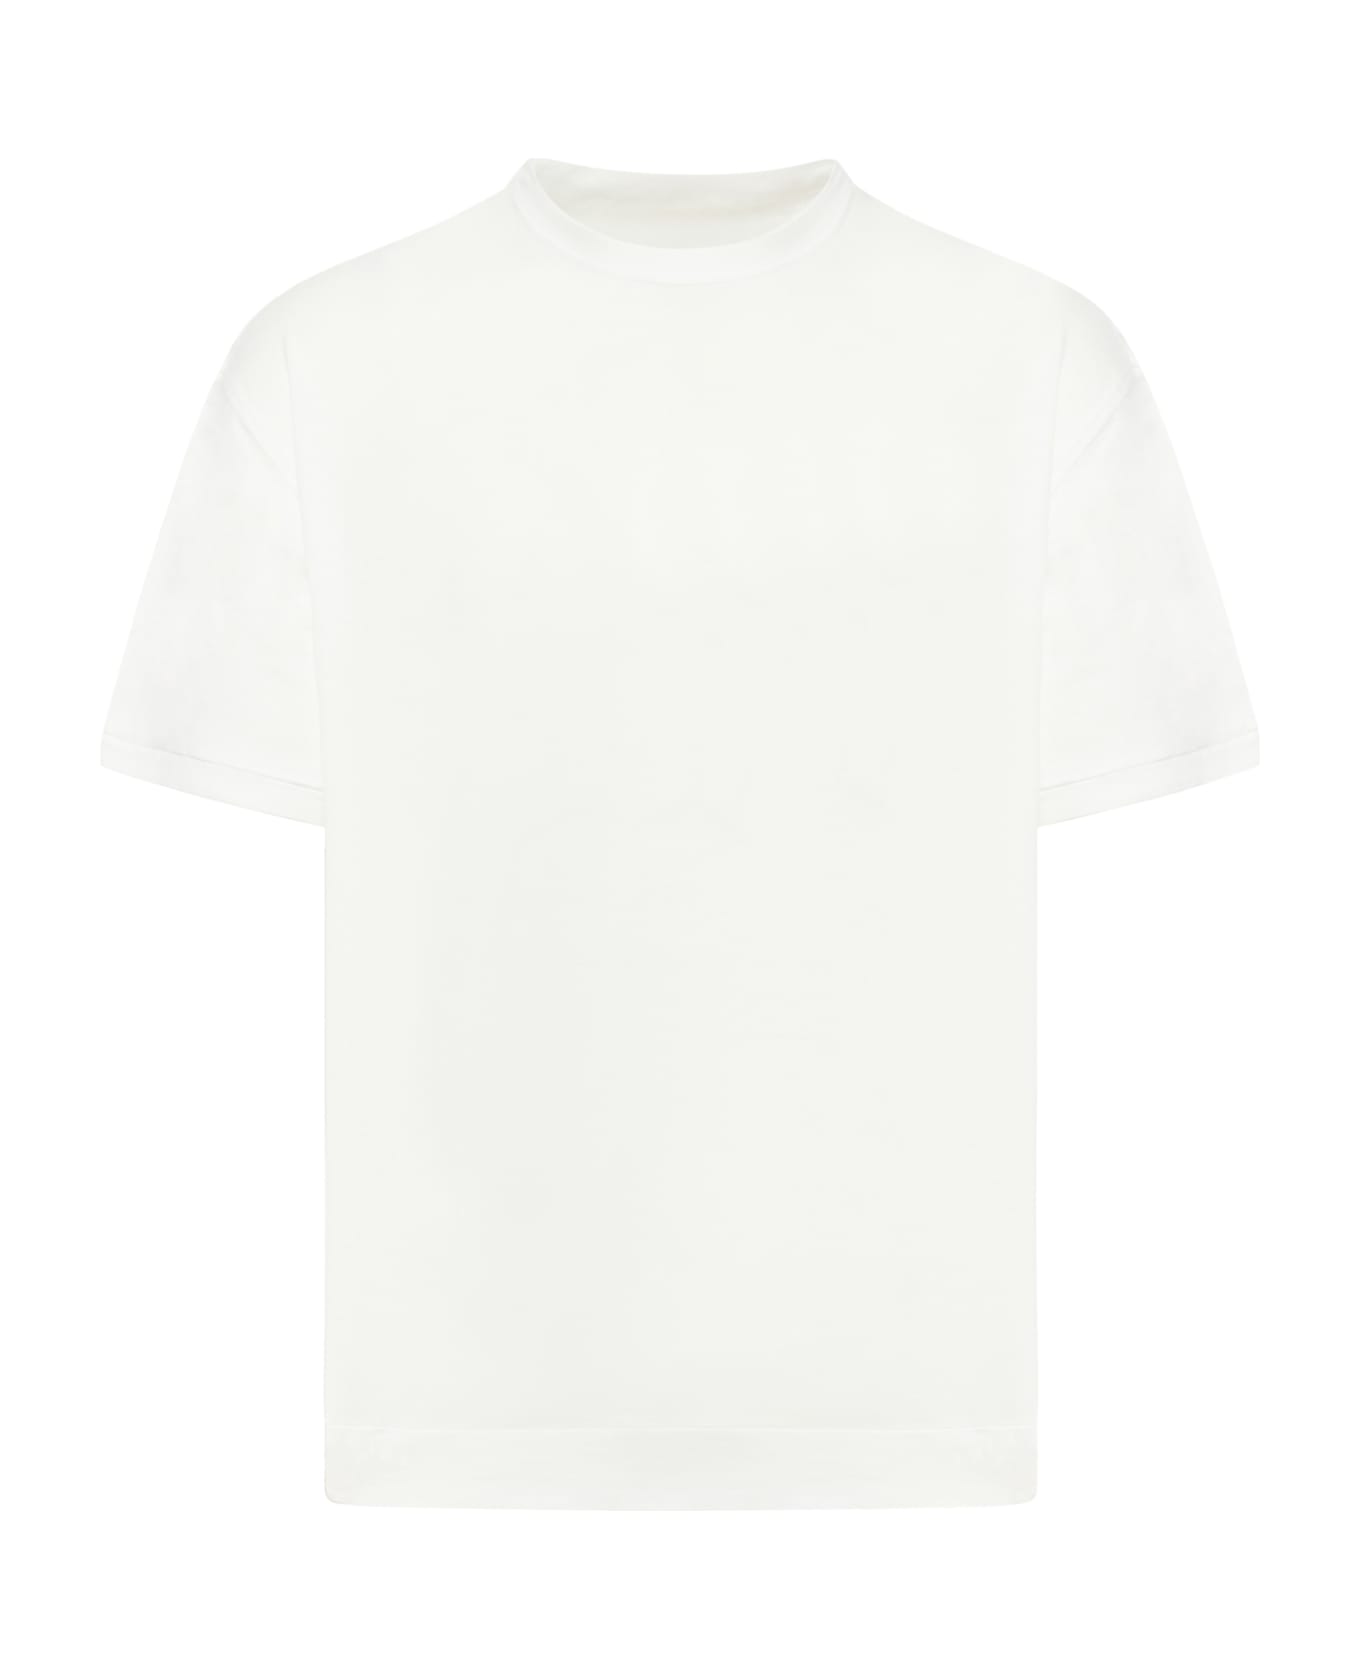 Ten C T-shirt Manica Corta - White